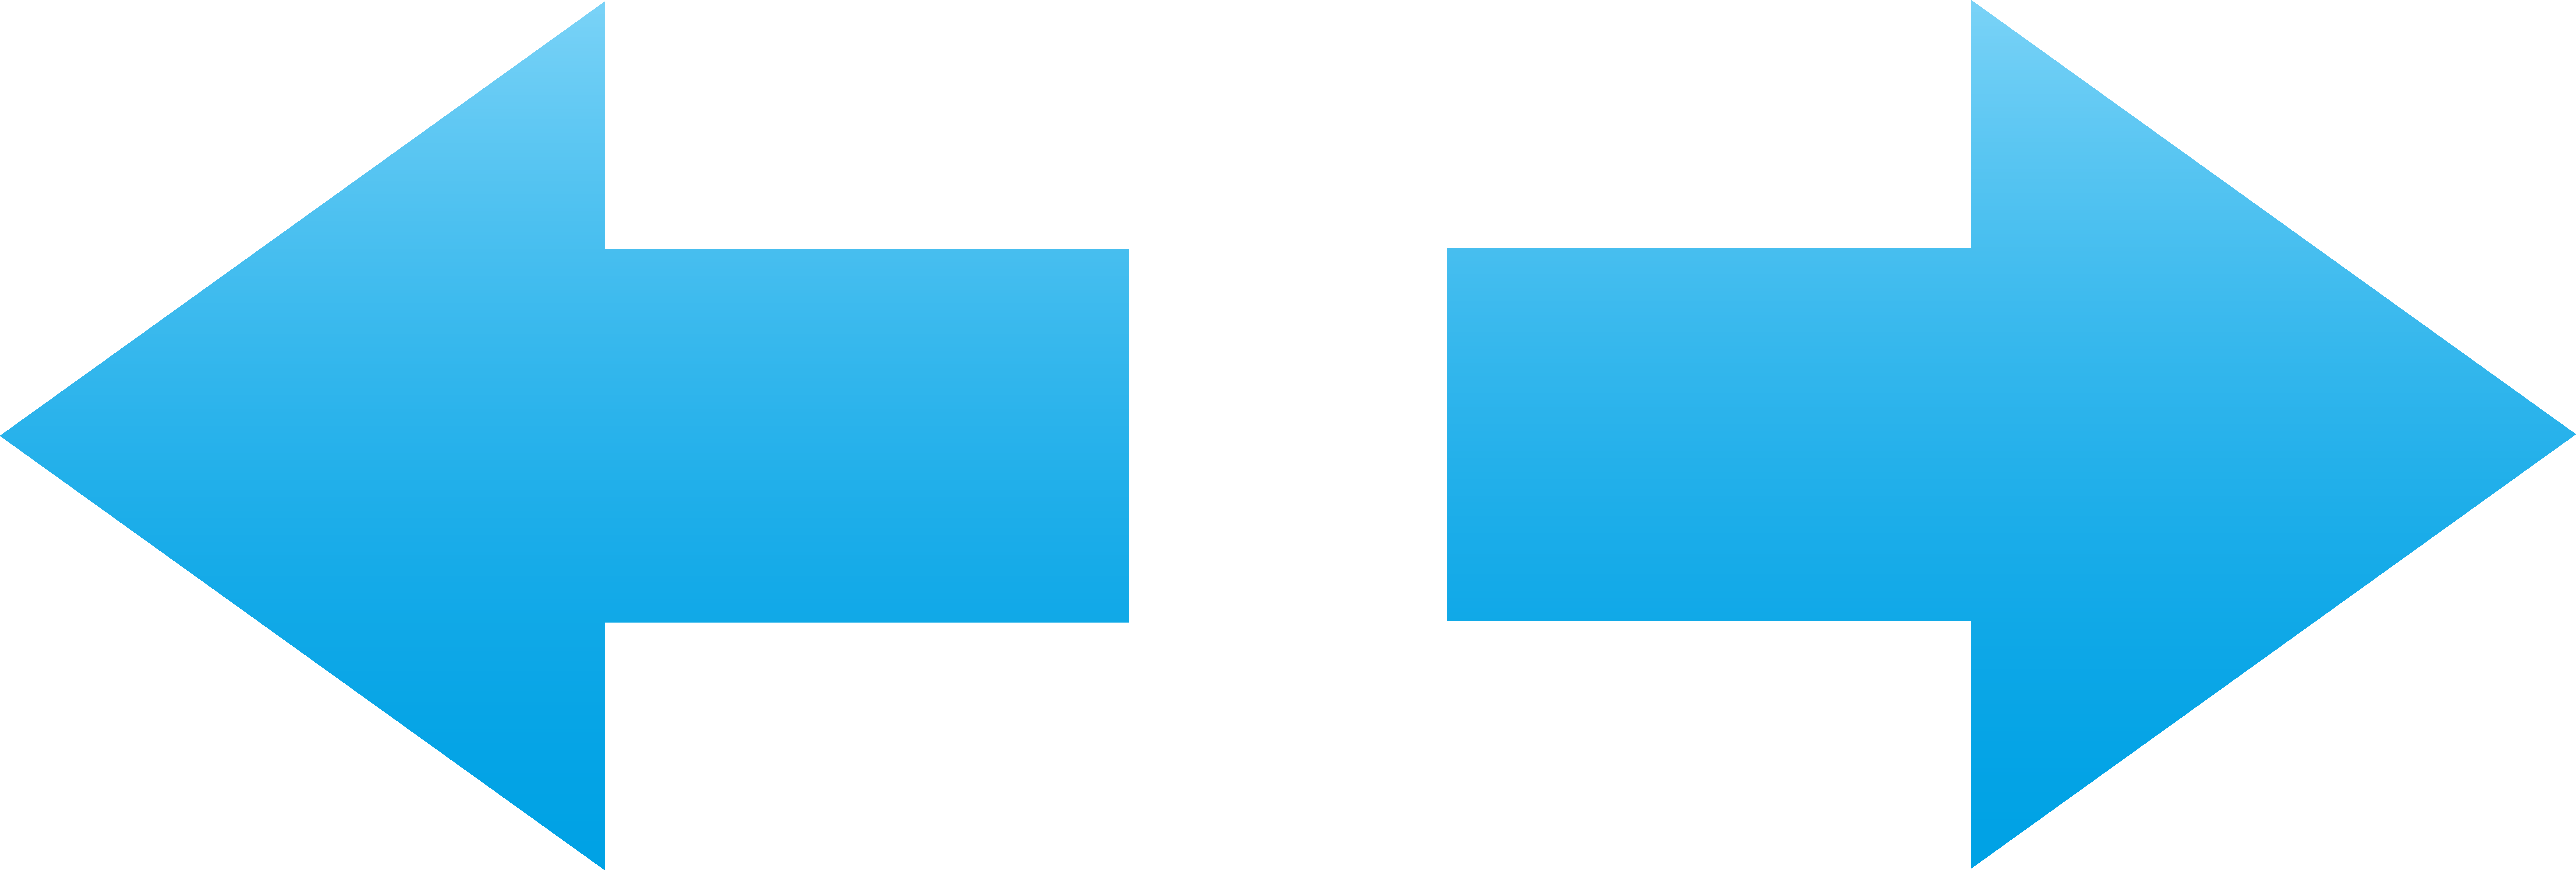 copy and paste arrow symbol